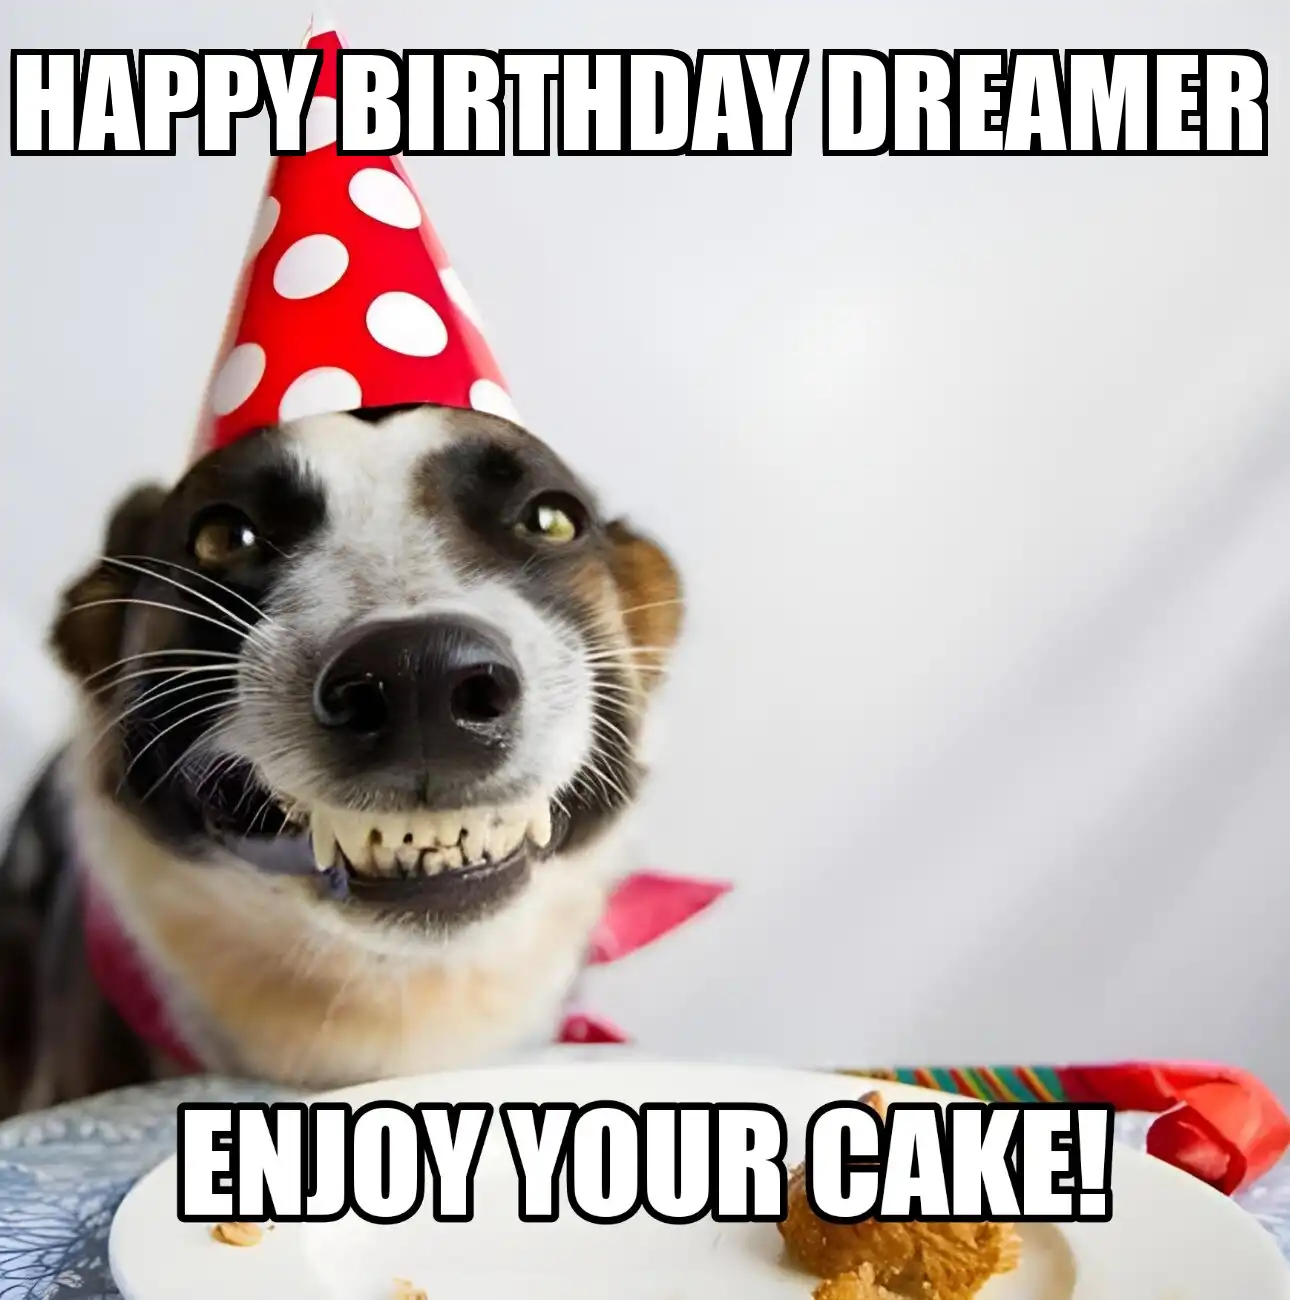 Happy Birthday Dreamer Enjoy Your Cake Dog Meme